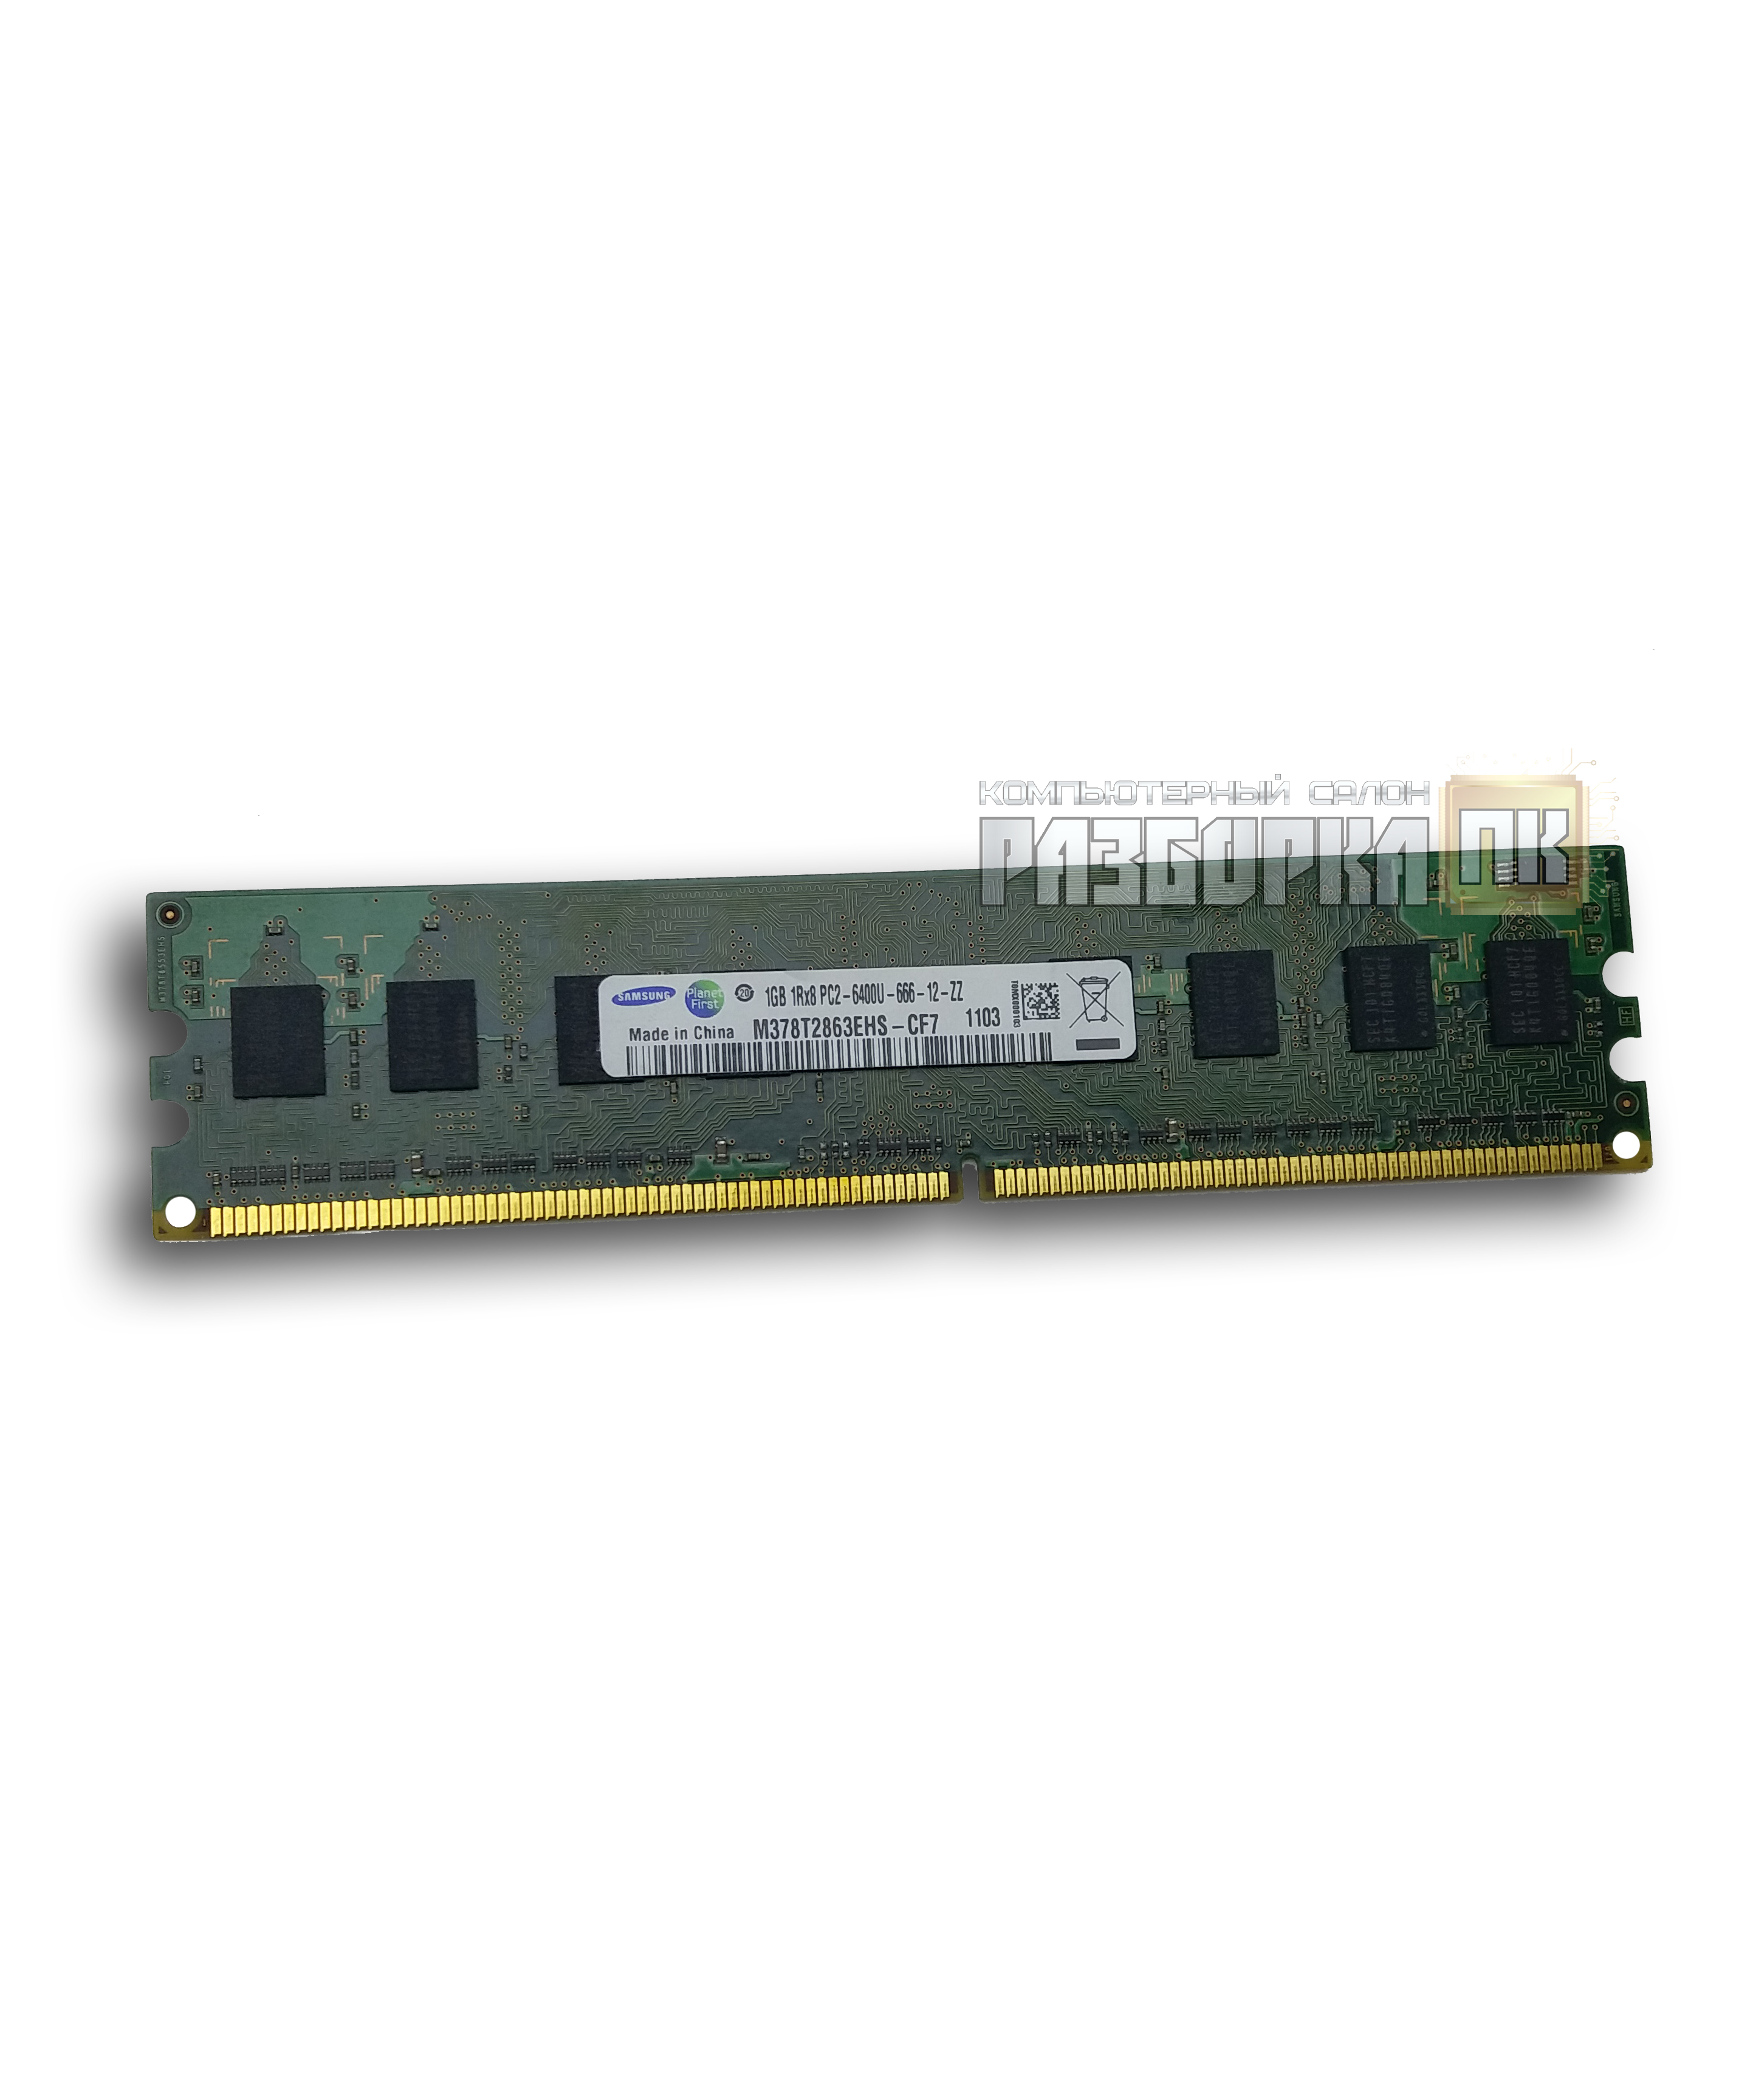 Оперативная память DIMM DDR-II 1GB PC2 6400 800Mhz